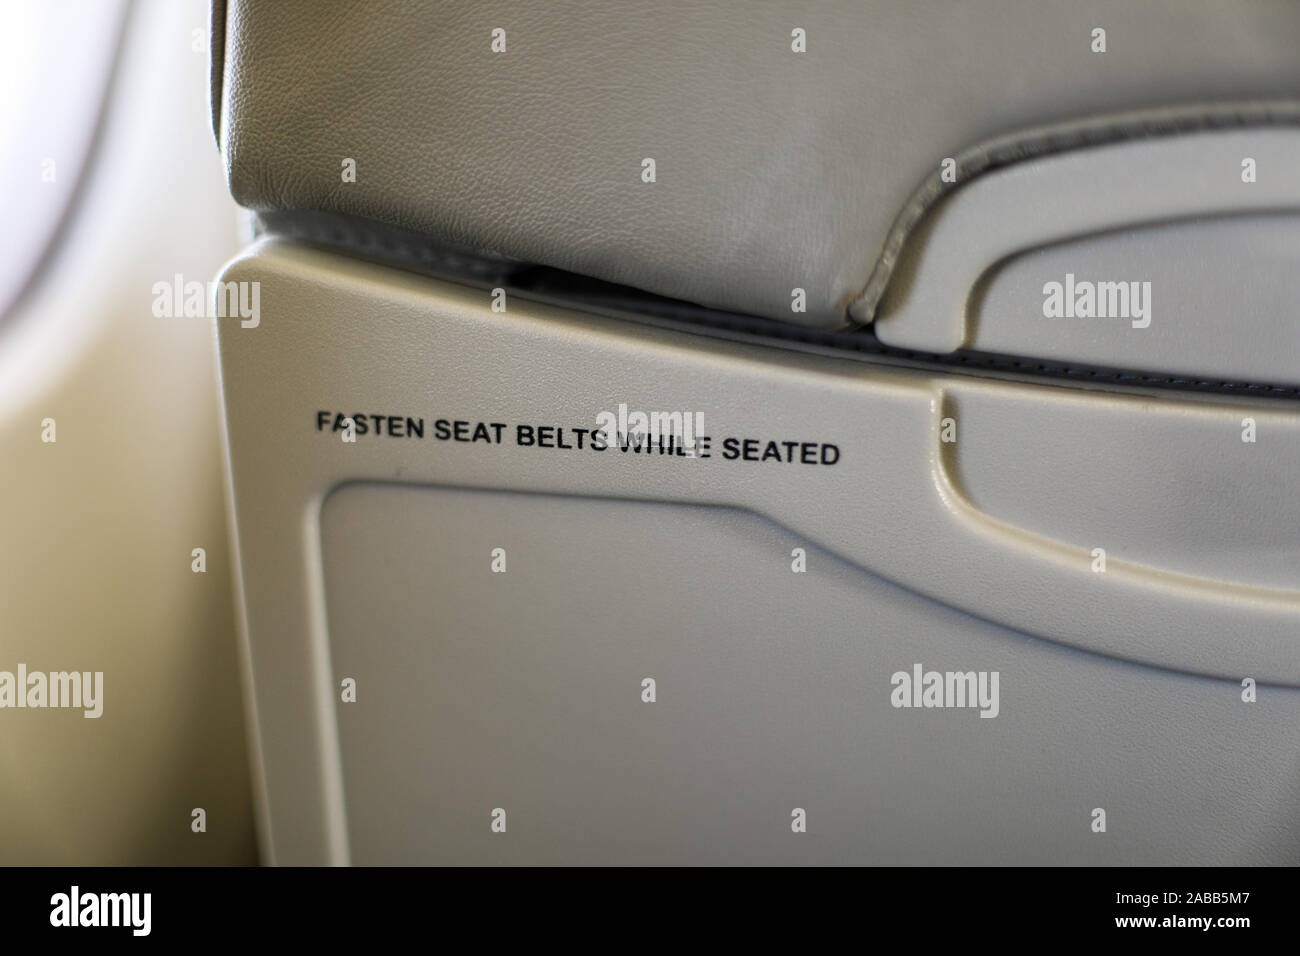 Allacciare le cinture di sicurezza mentre si è seduti - Testo sul retro di un velivolo per sedile passeggero Foto Stock